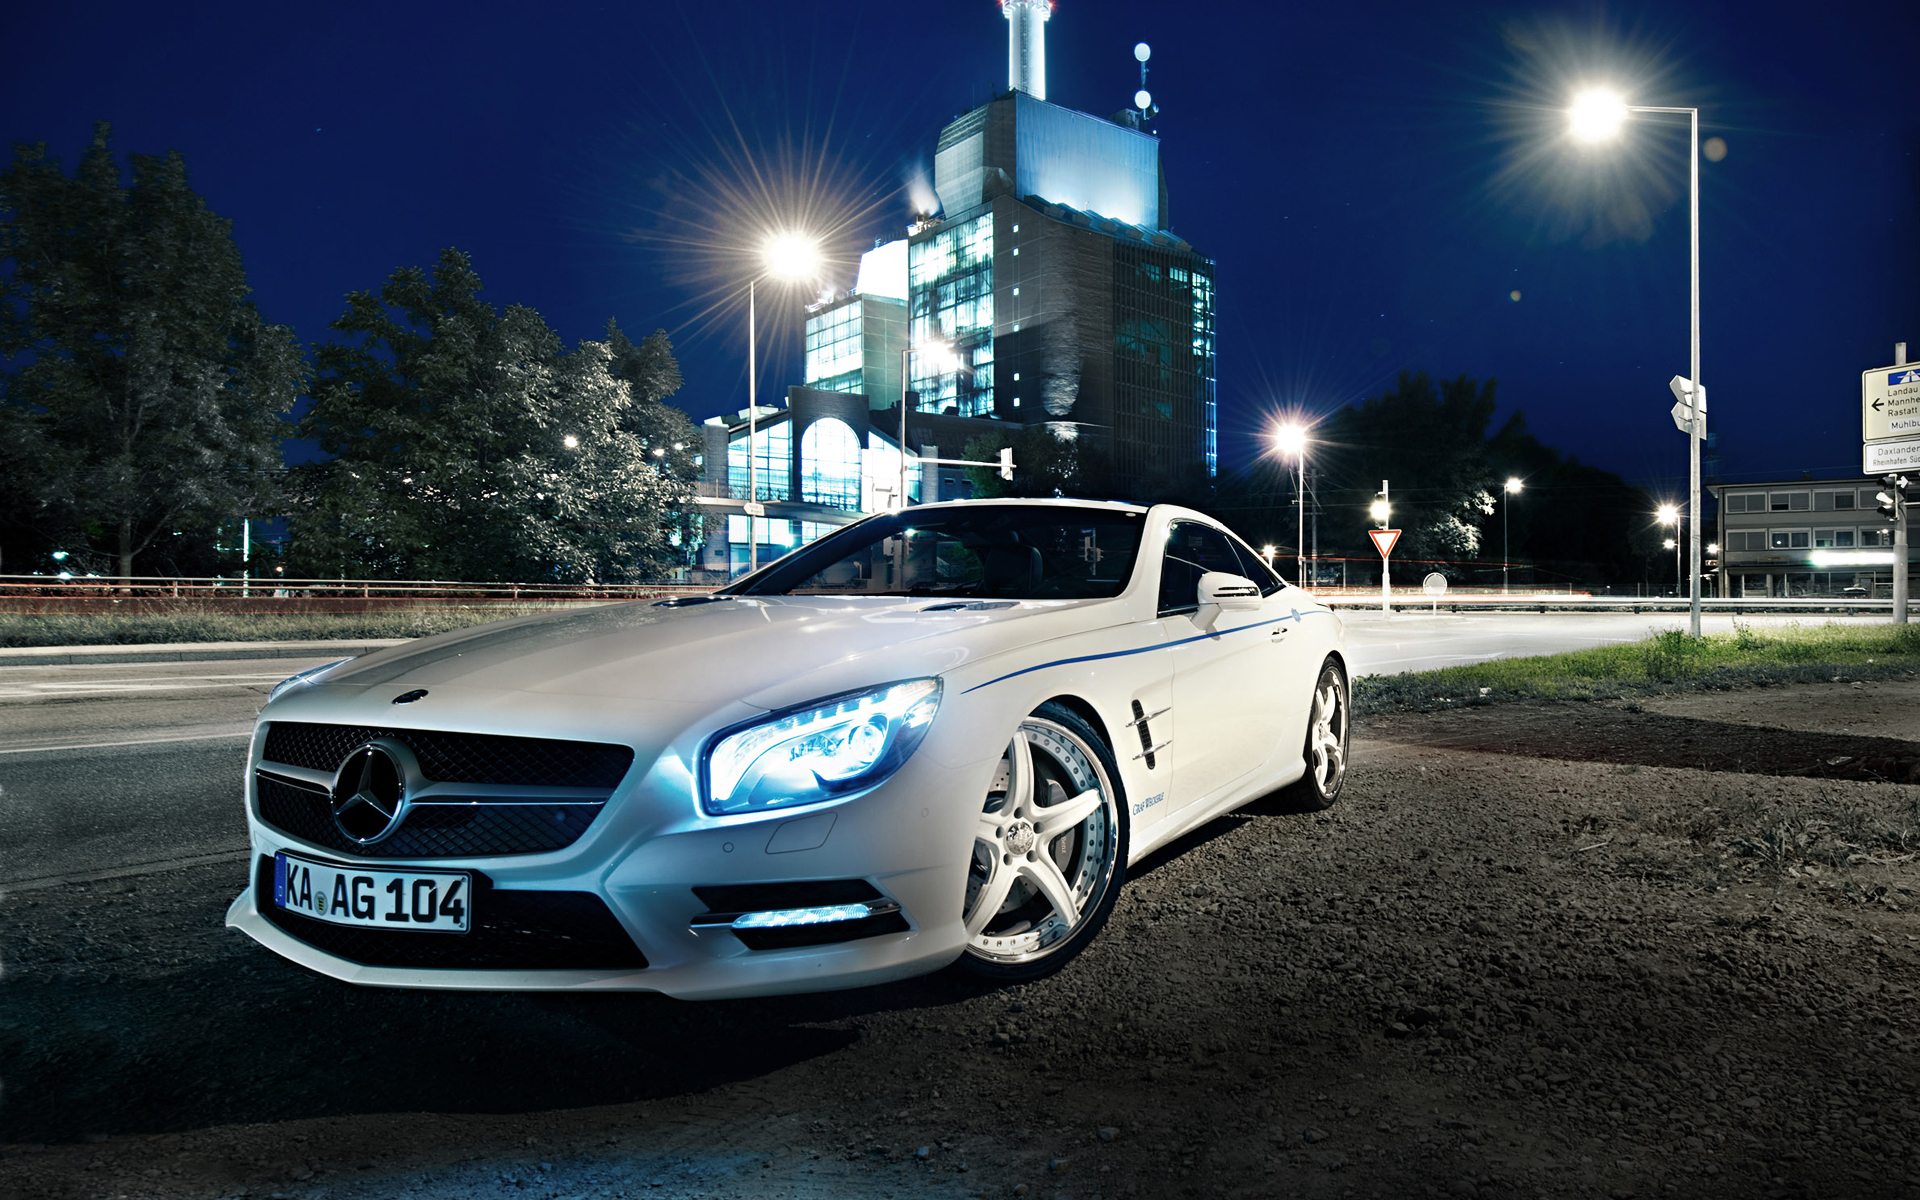 Descarga gratuita de fondo de pantalla para móvil de Mercedes, Mercedes Benz, Vehículos.